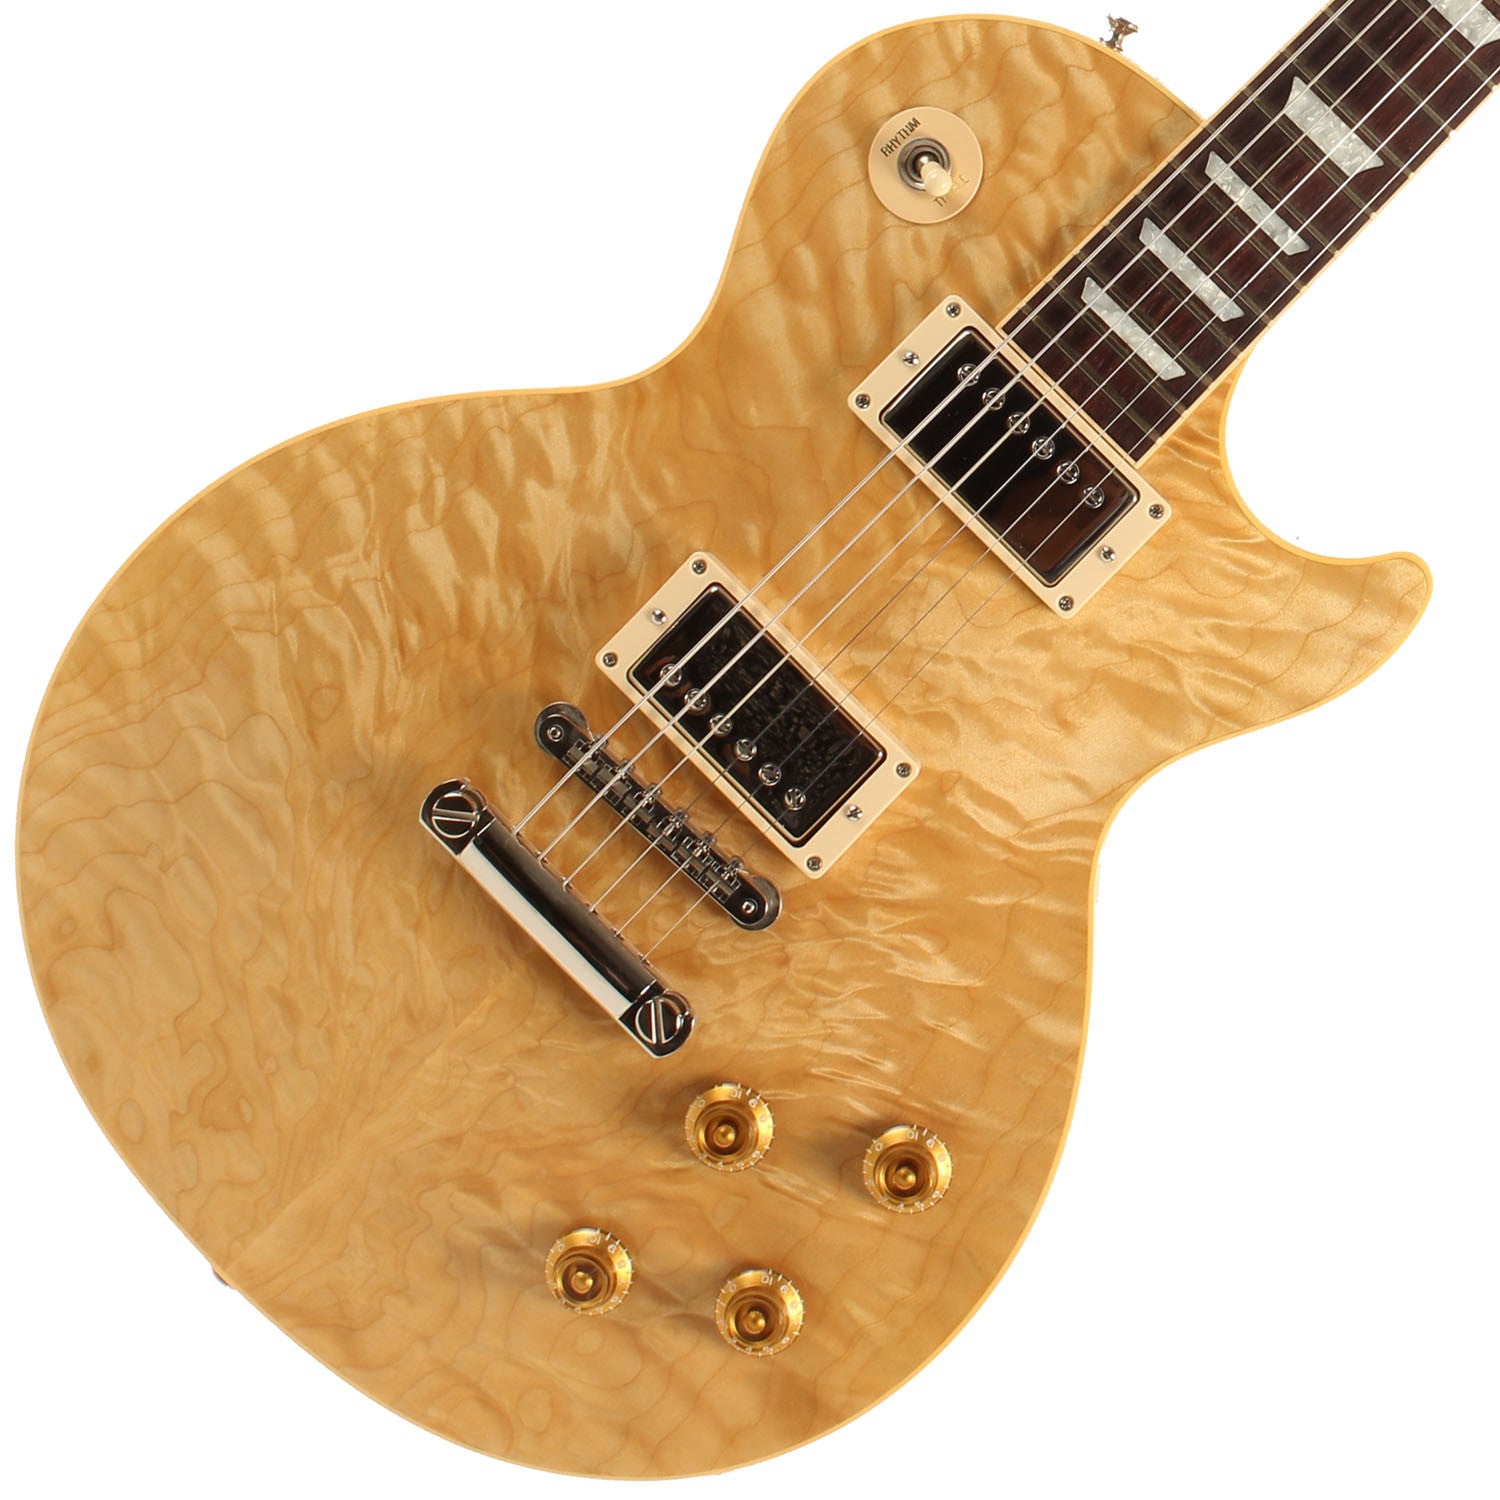 2001 Gibson Custom Shop Les Paul Standard Korina with Quilt top - Garrett Park Guitars
 - 1